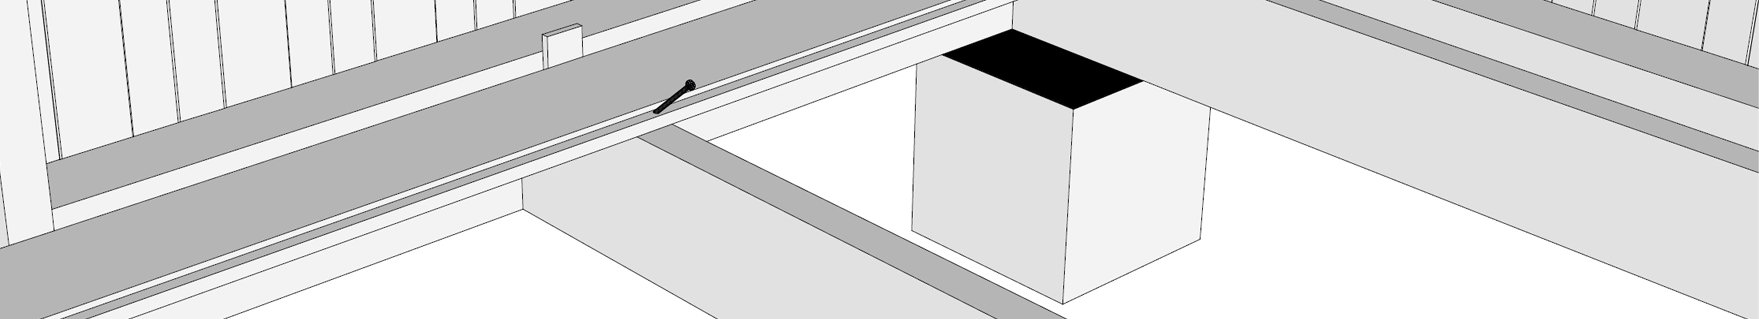 Monter gulvbord, spikre usynlig med trådspiker, 60 x 2,3, til